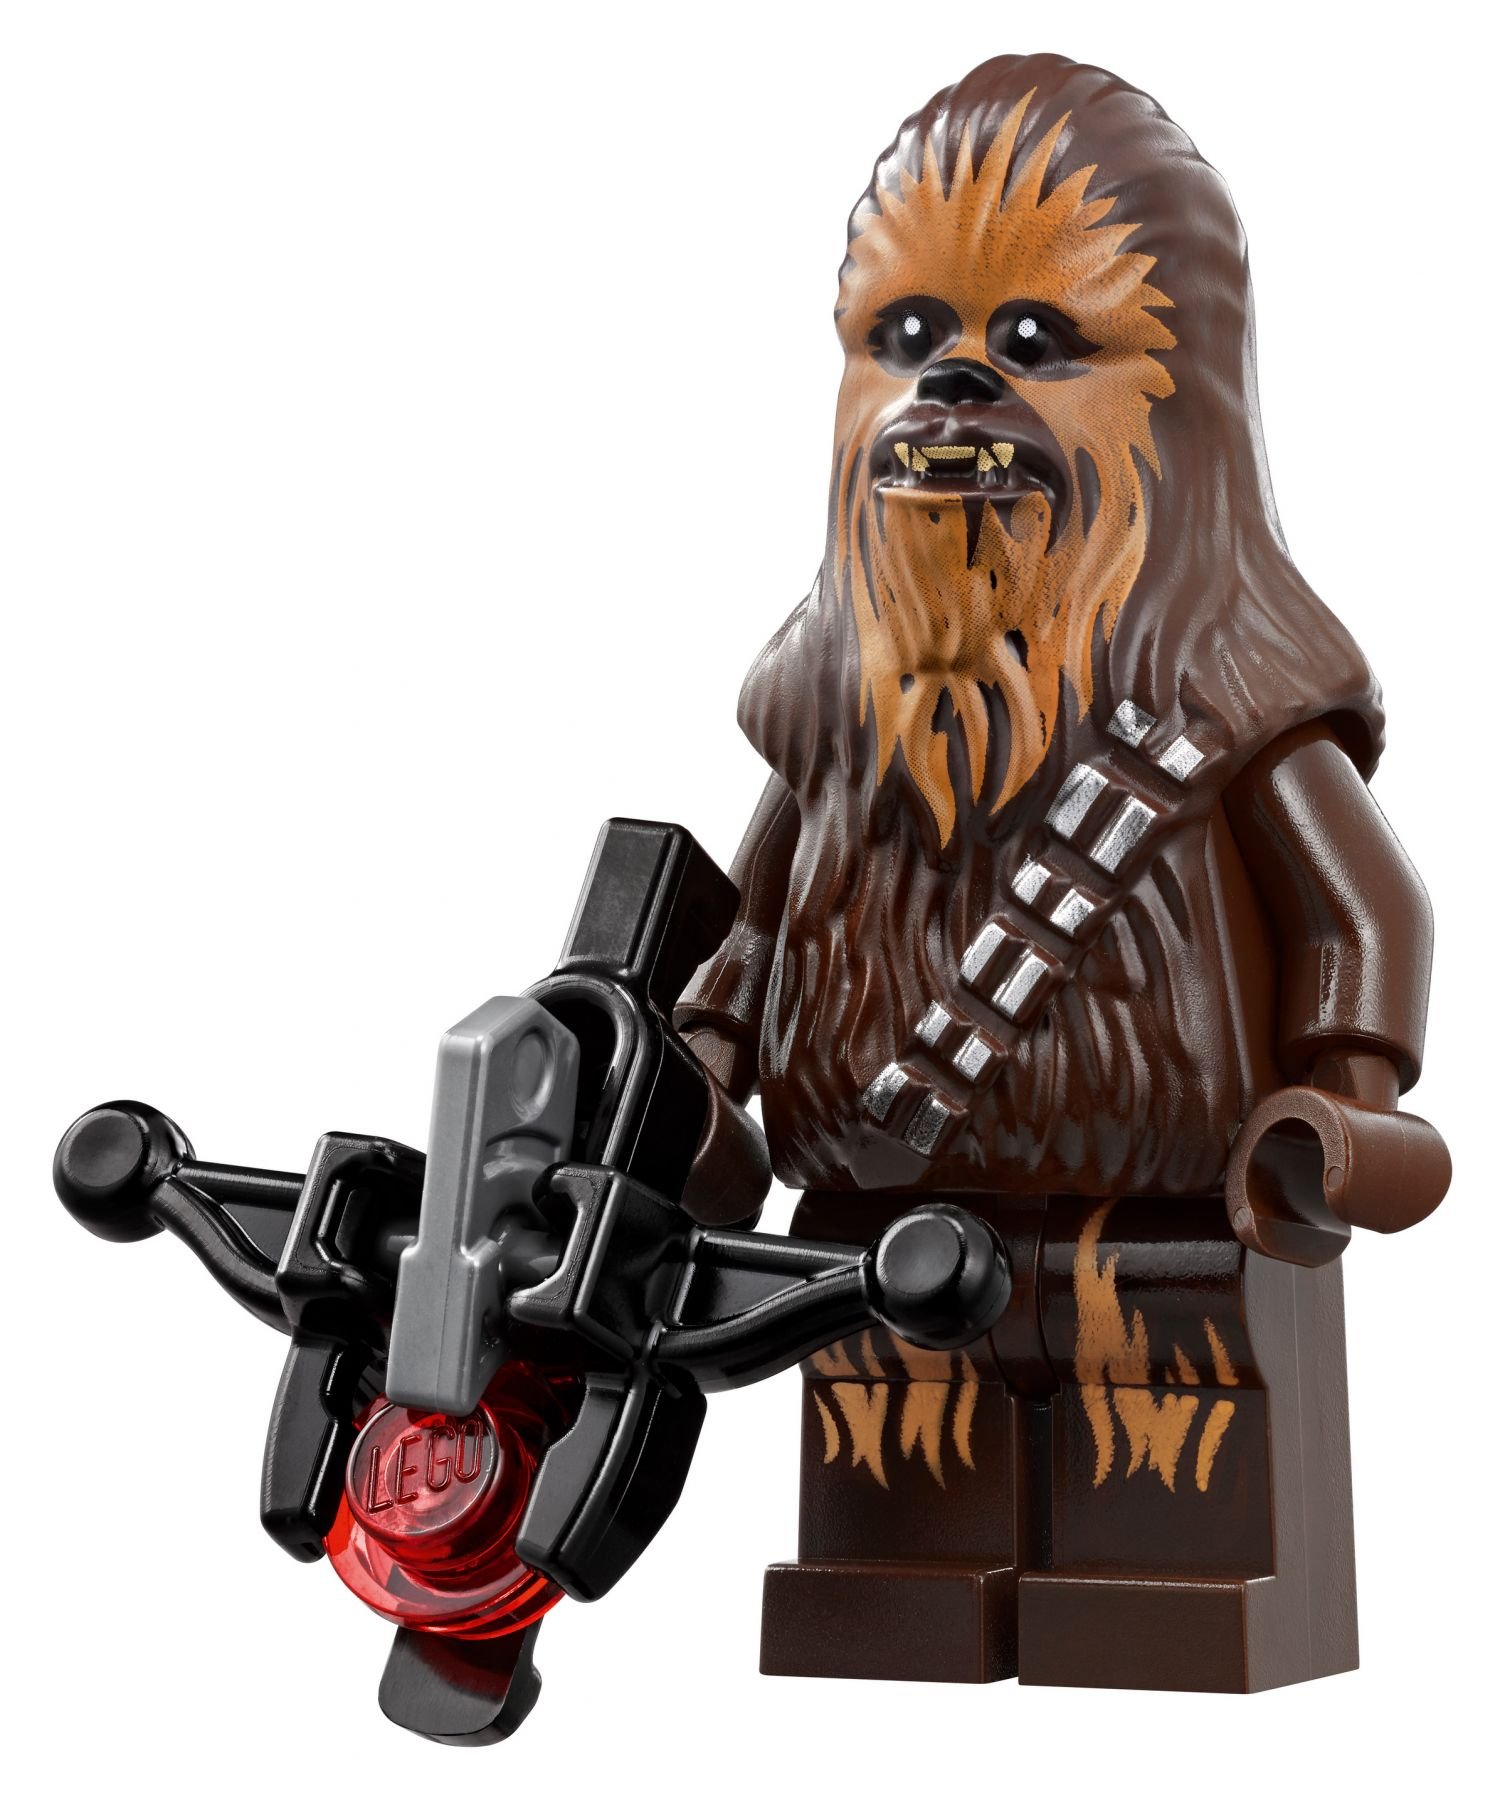 LEGO Star Wars 75192 Millennium Falcon™ LEGO_75192_alt18.jpg